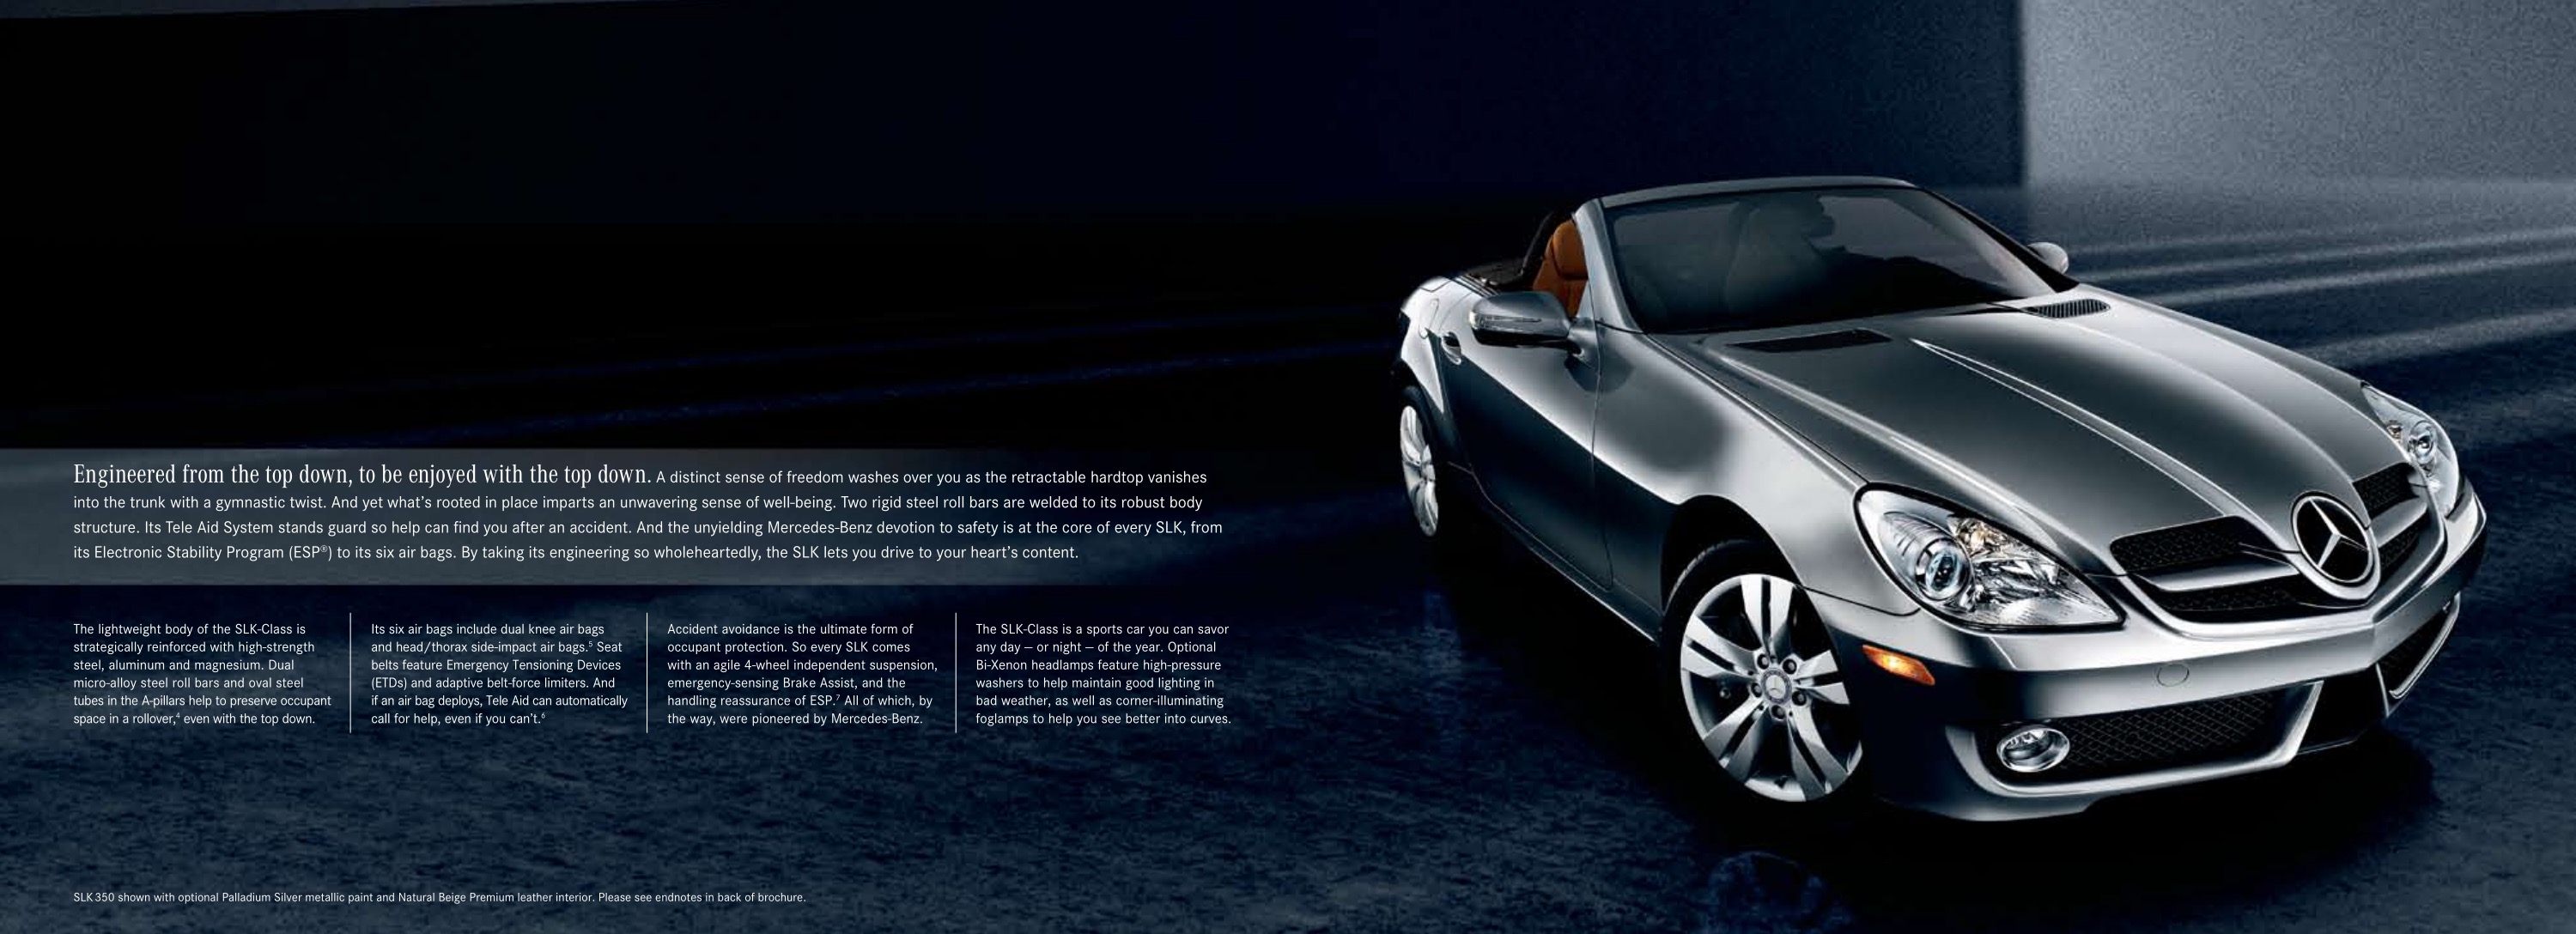 2010 Mercedes-Benz SLK Brochure Page 4